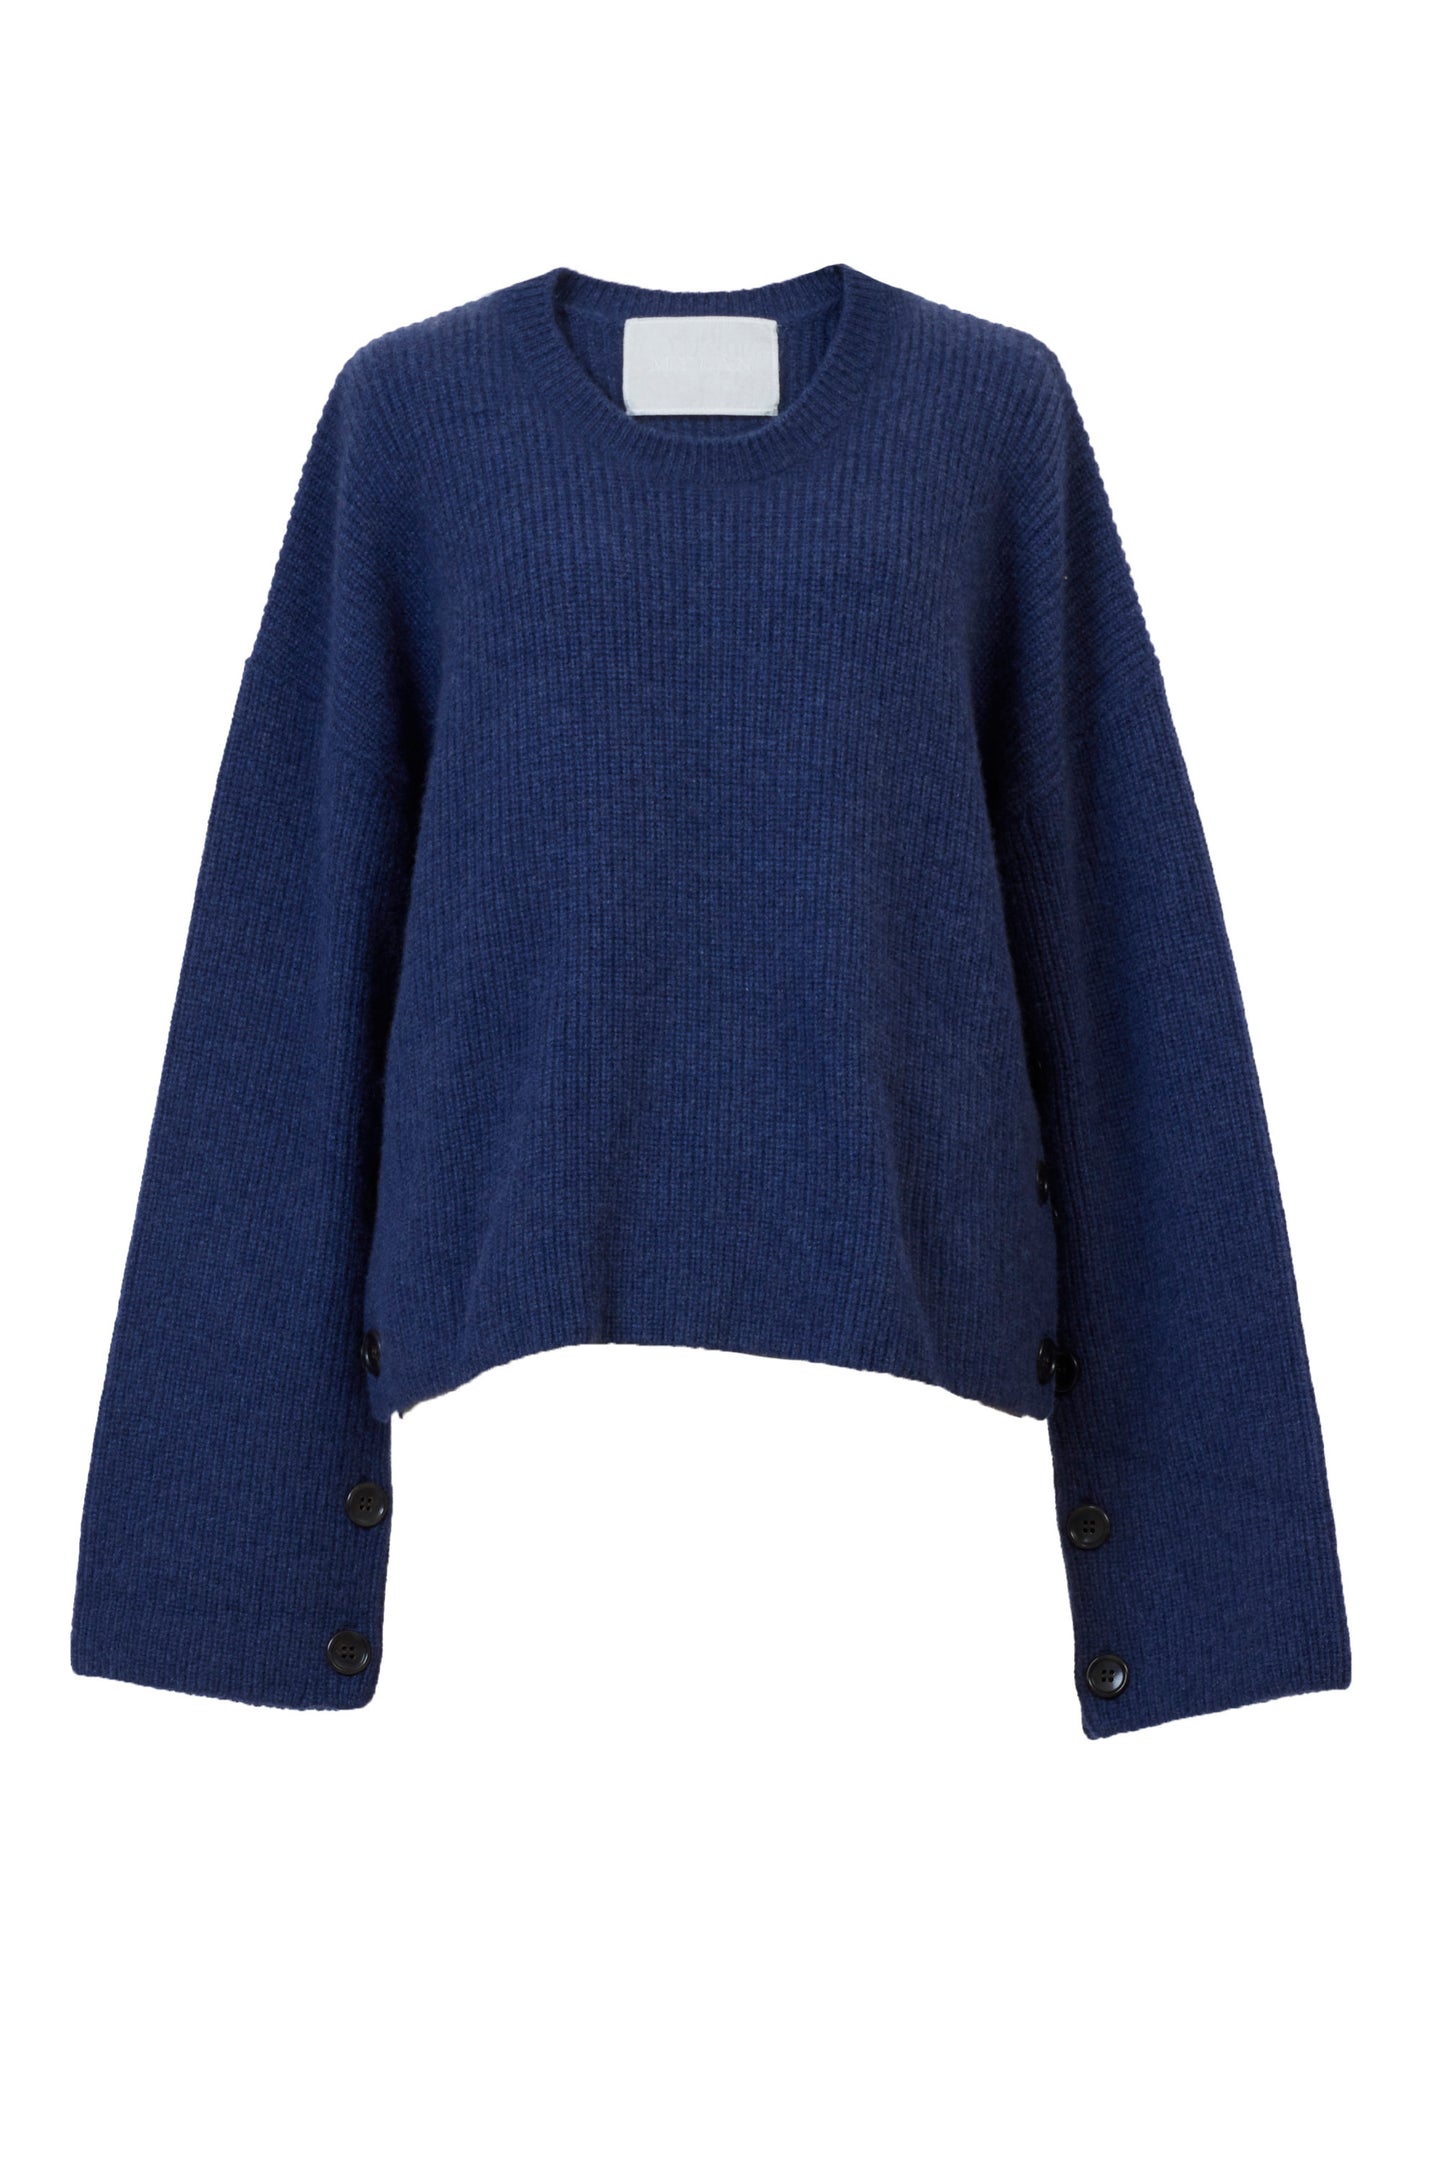 Cashmere Side Button Knit | Indigo